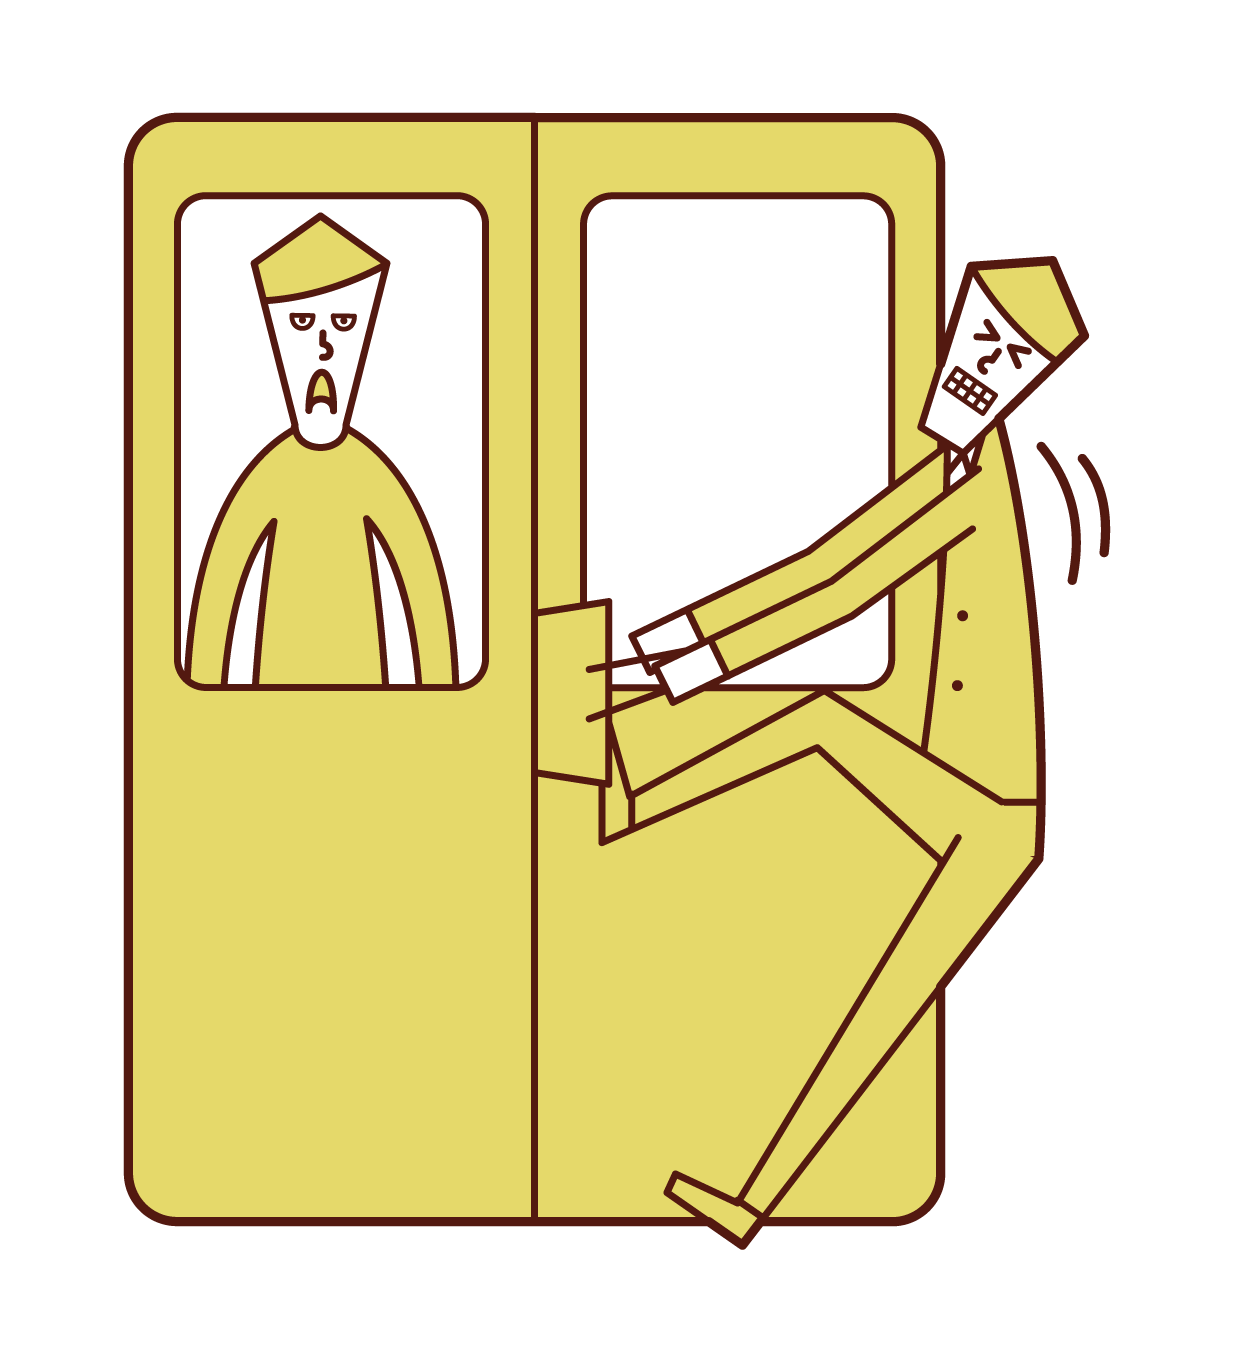 電車のドアに荷物が挟まれた人 男性 のイラスト フリーイラスト素材 Kukukeke ククケケ